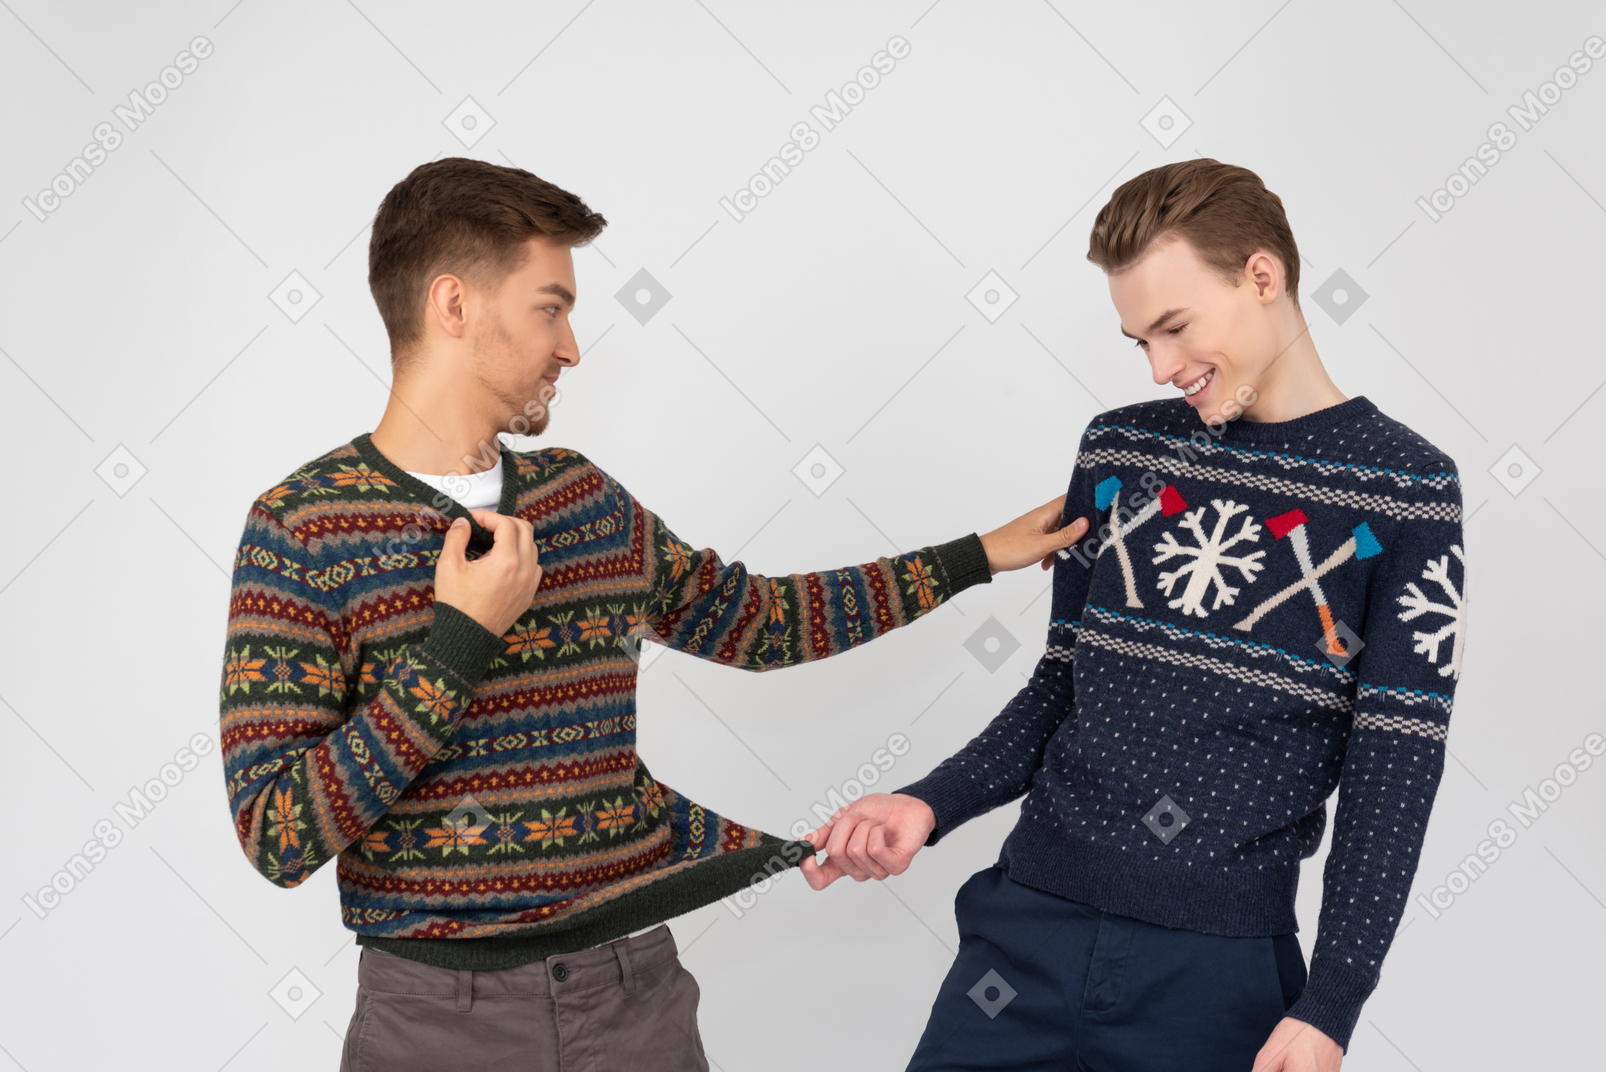 Verificando esses suéteres de natal